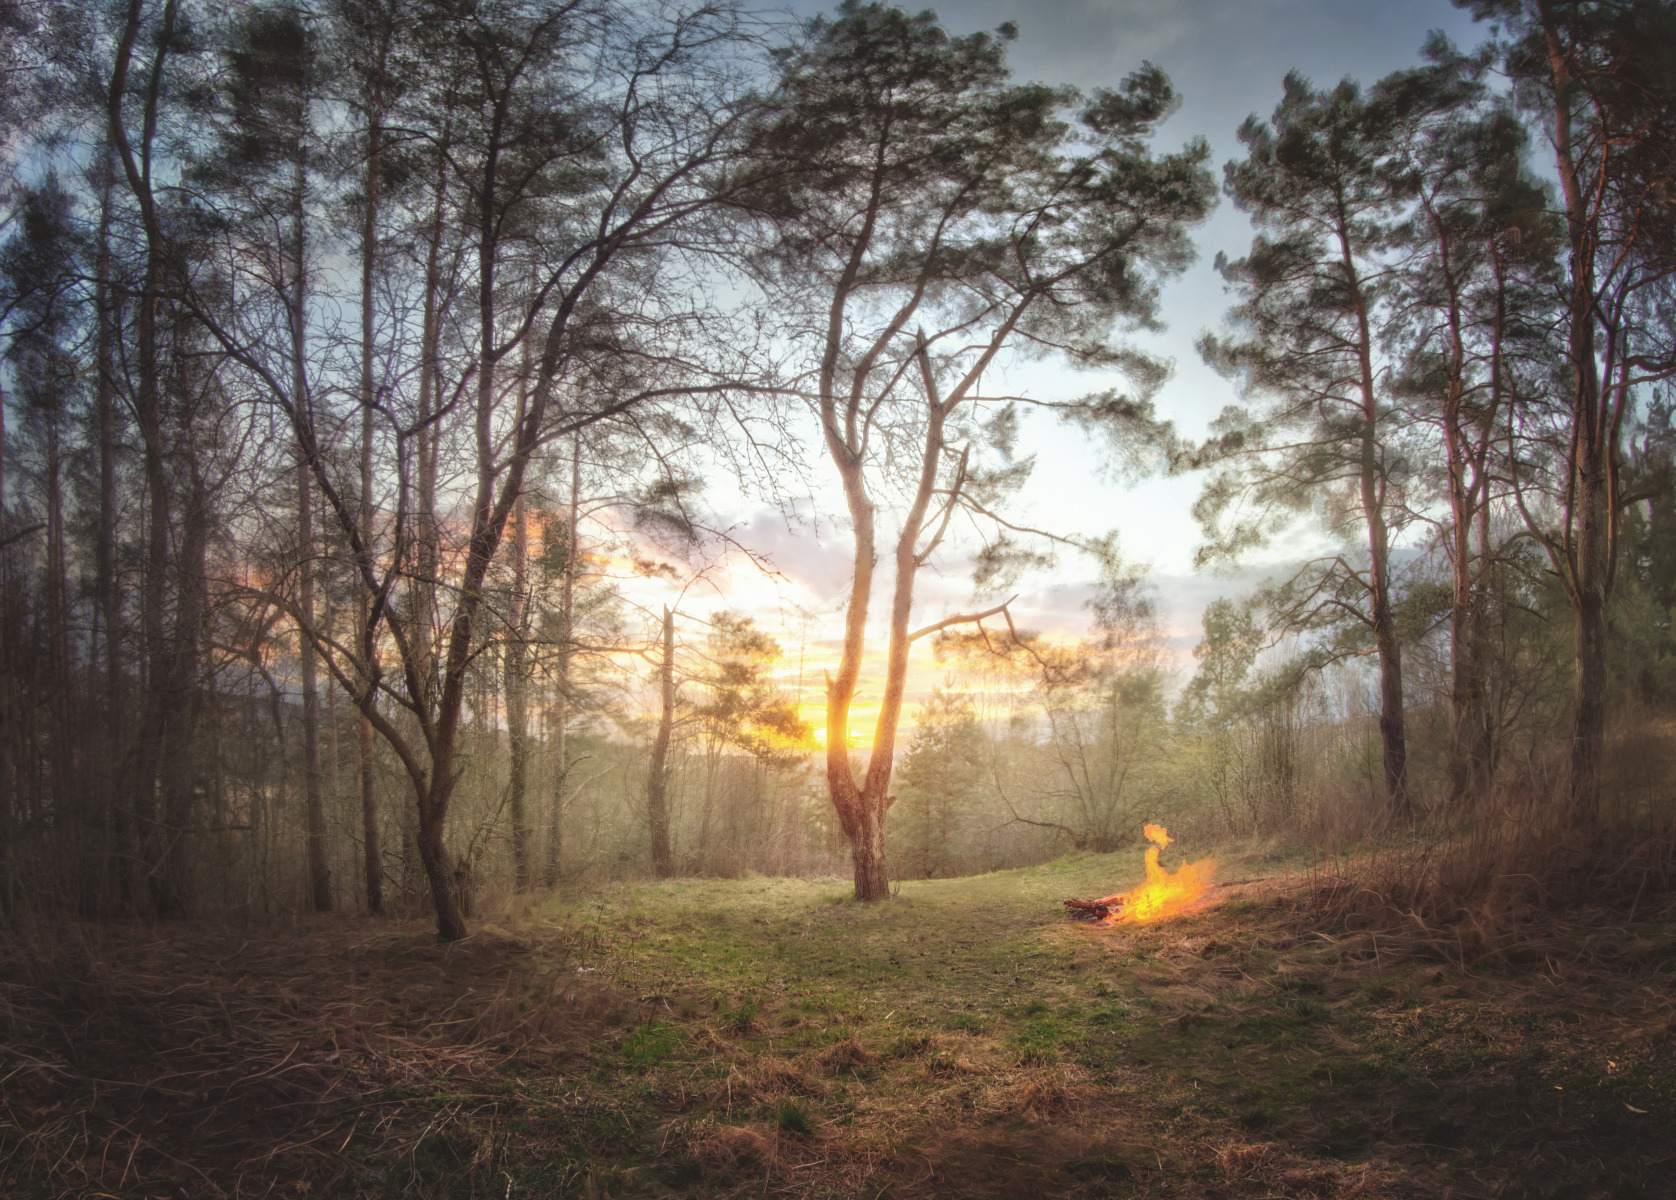 Весенний закат в огне | Фотограф Роман Филиповец | foto.by фото.бай